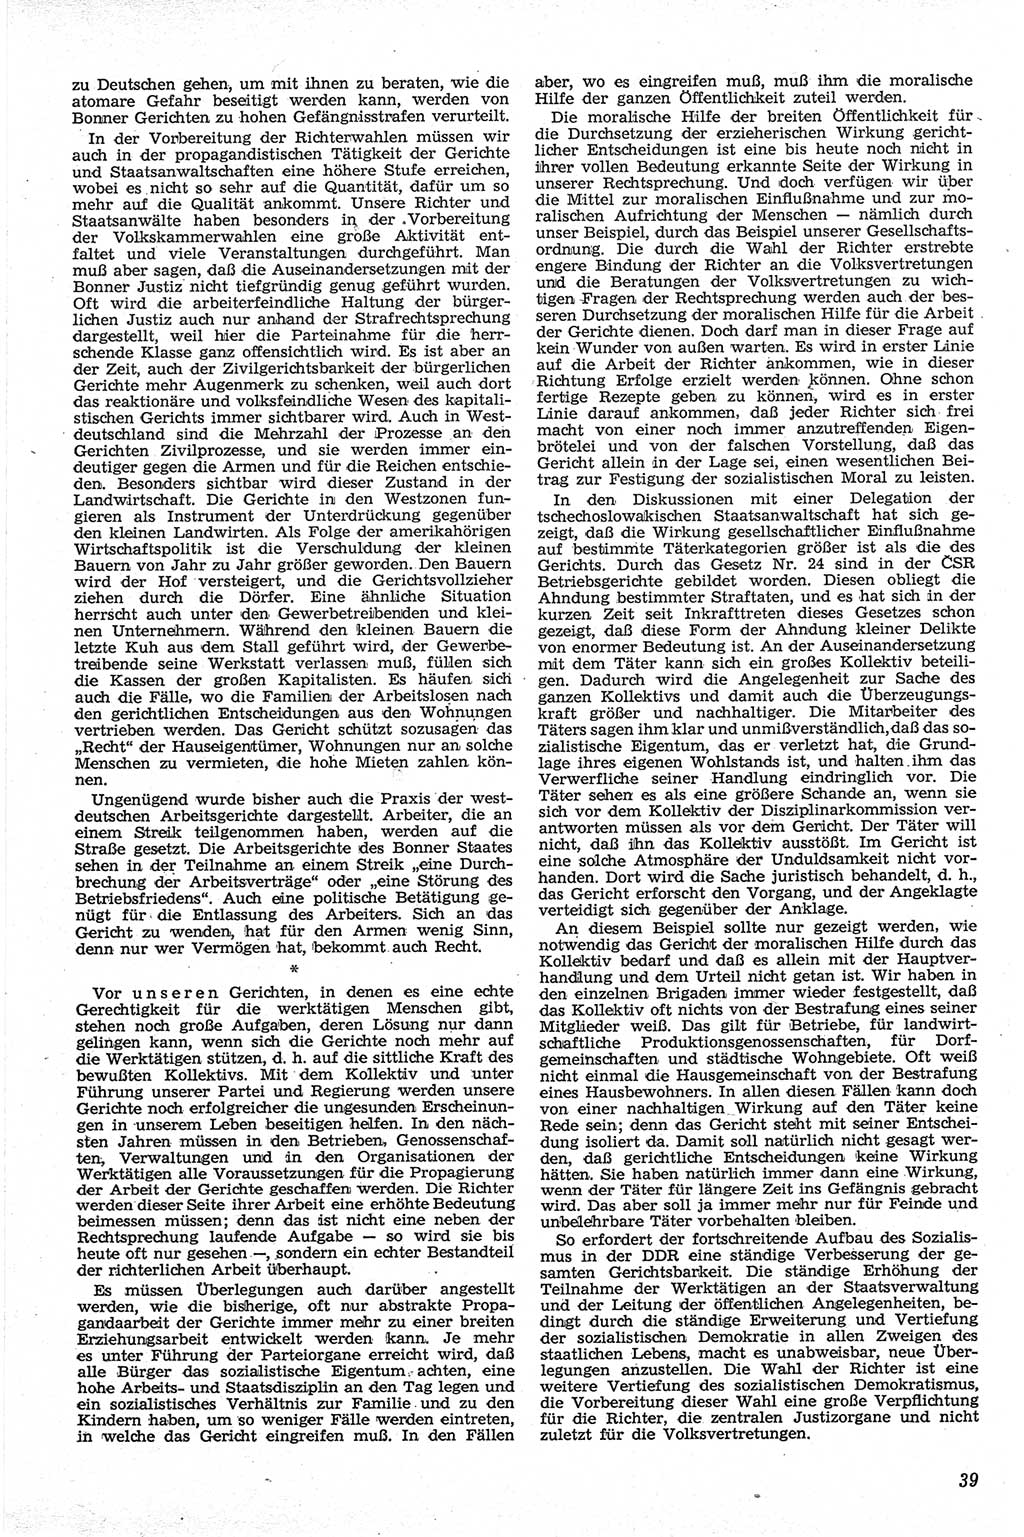 Neue Justiz (NJ), Zeitschrift für Recht und Rechtswissenschaft [Deutsche Demokratische Republik (DDR)], 13. Jahrgang 1959, Seite 39 (NJ DDR 1959, S. 39)